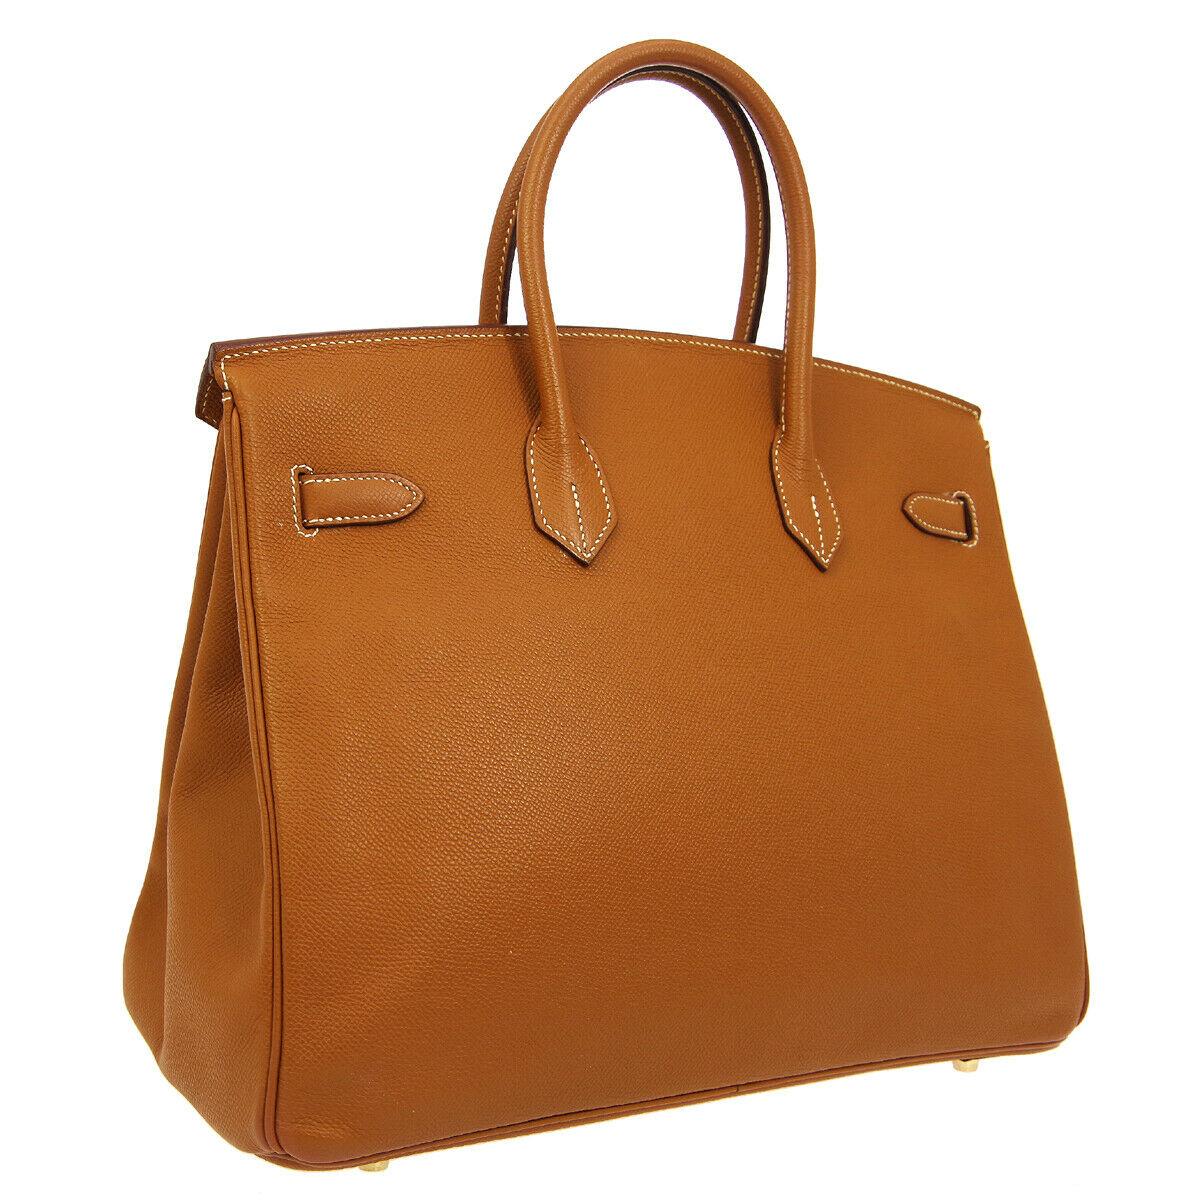 Brown Hermes Birkin 35 Cognac Leather Top Handle Satchel Travel Tote Bag in Box